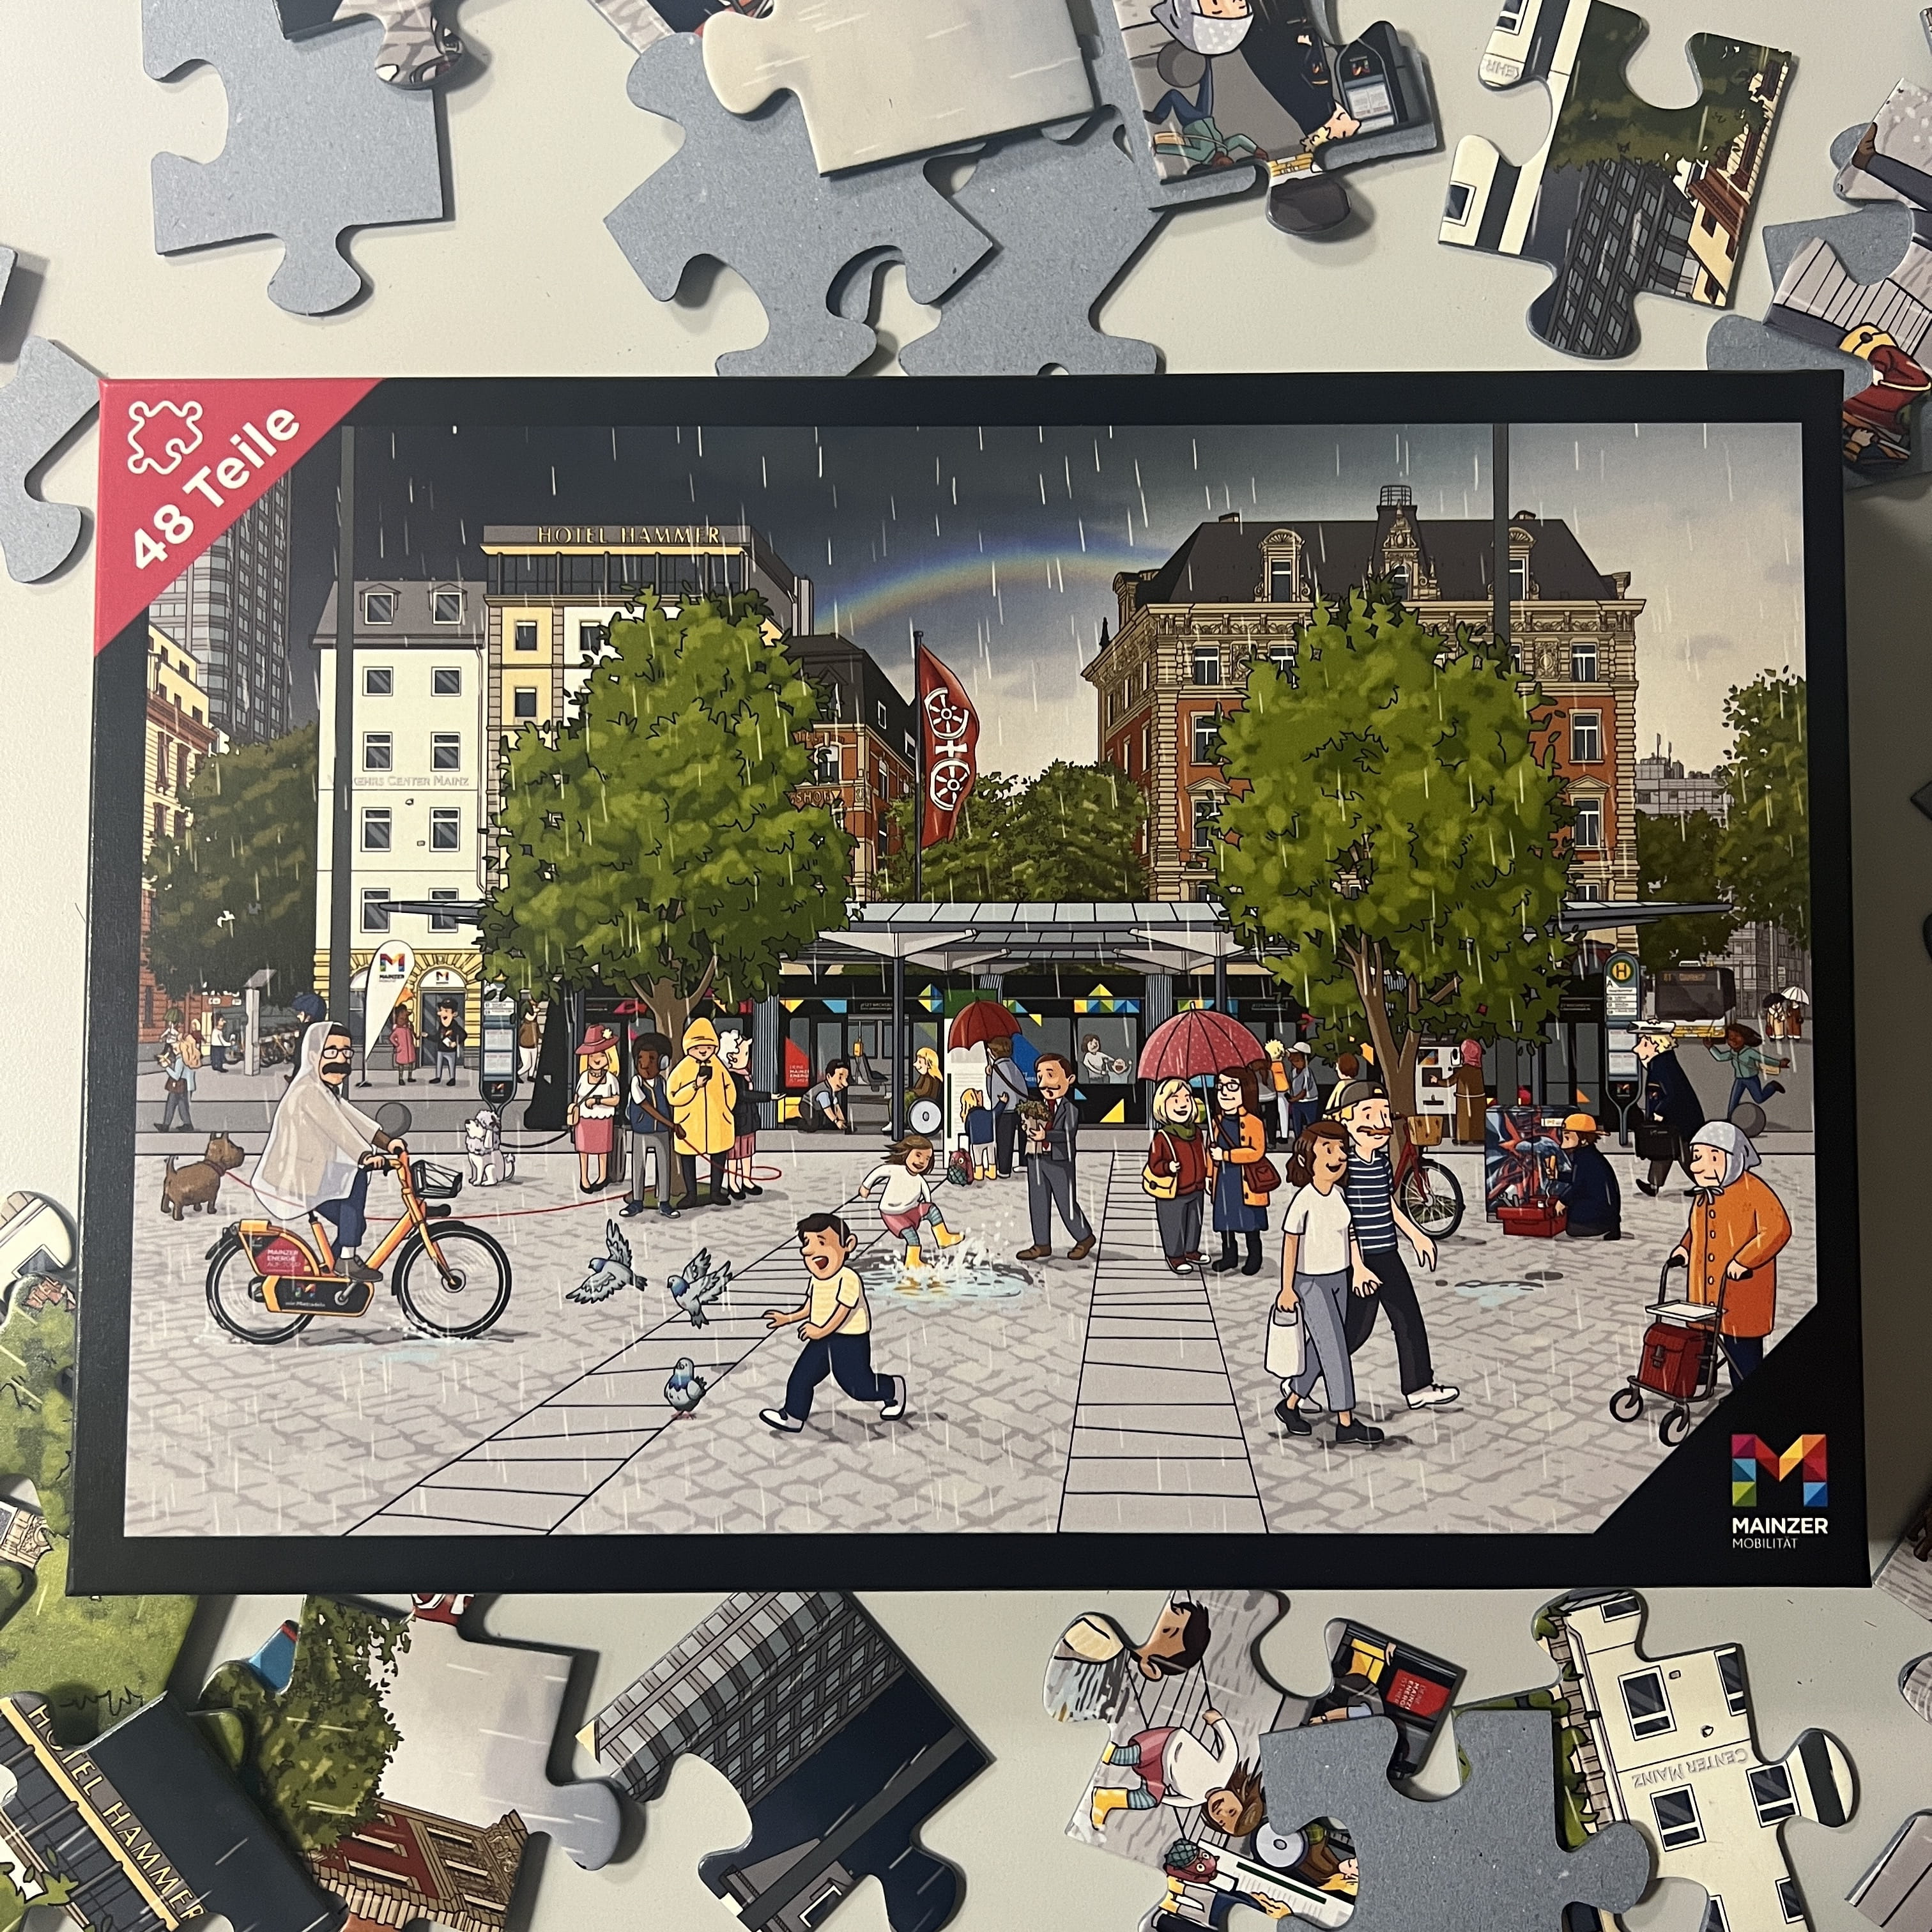 Foto, auf dem das Cover des Kinderpuzzles der Mainzer Mobilität zu sehen ist